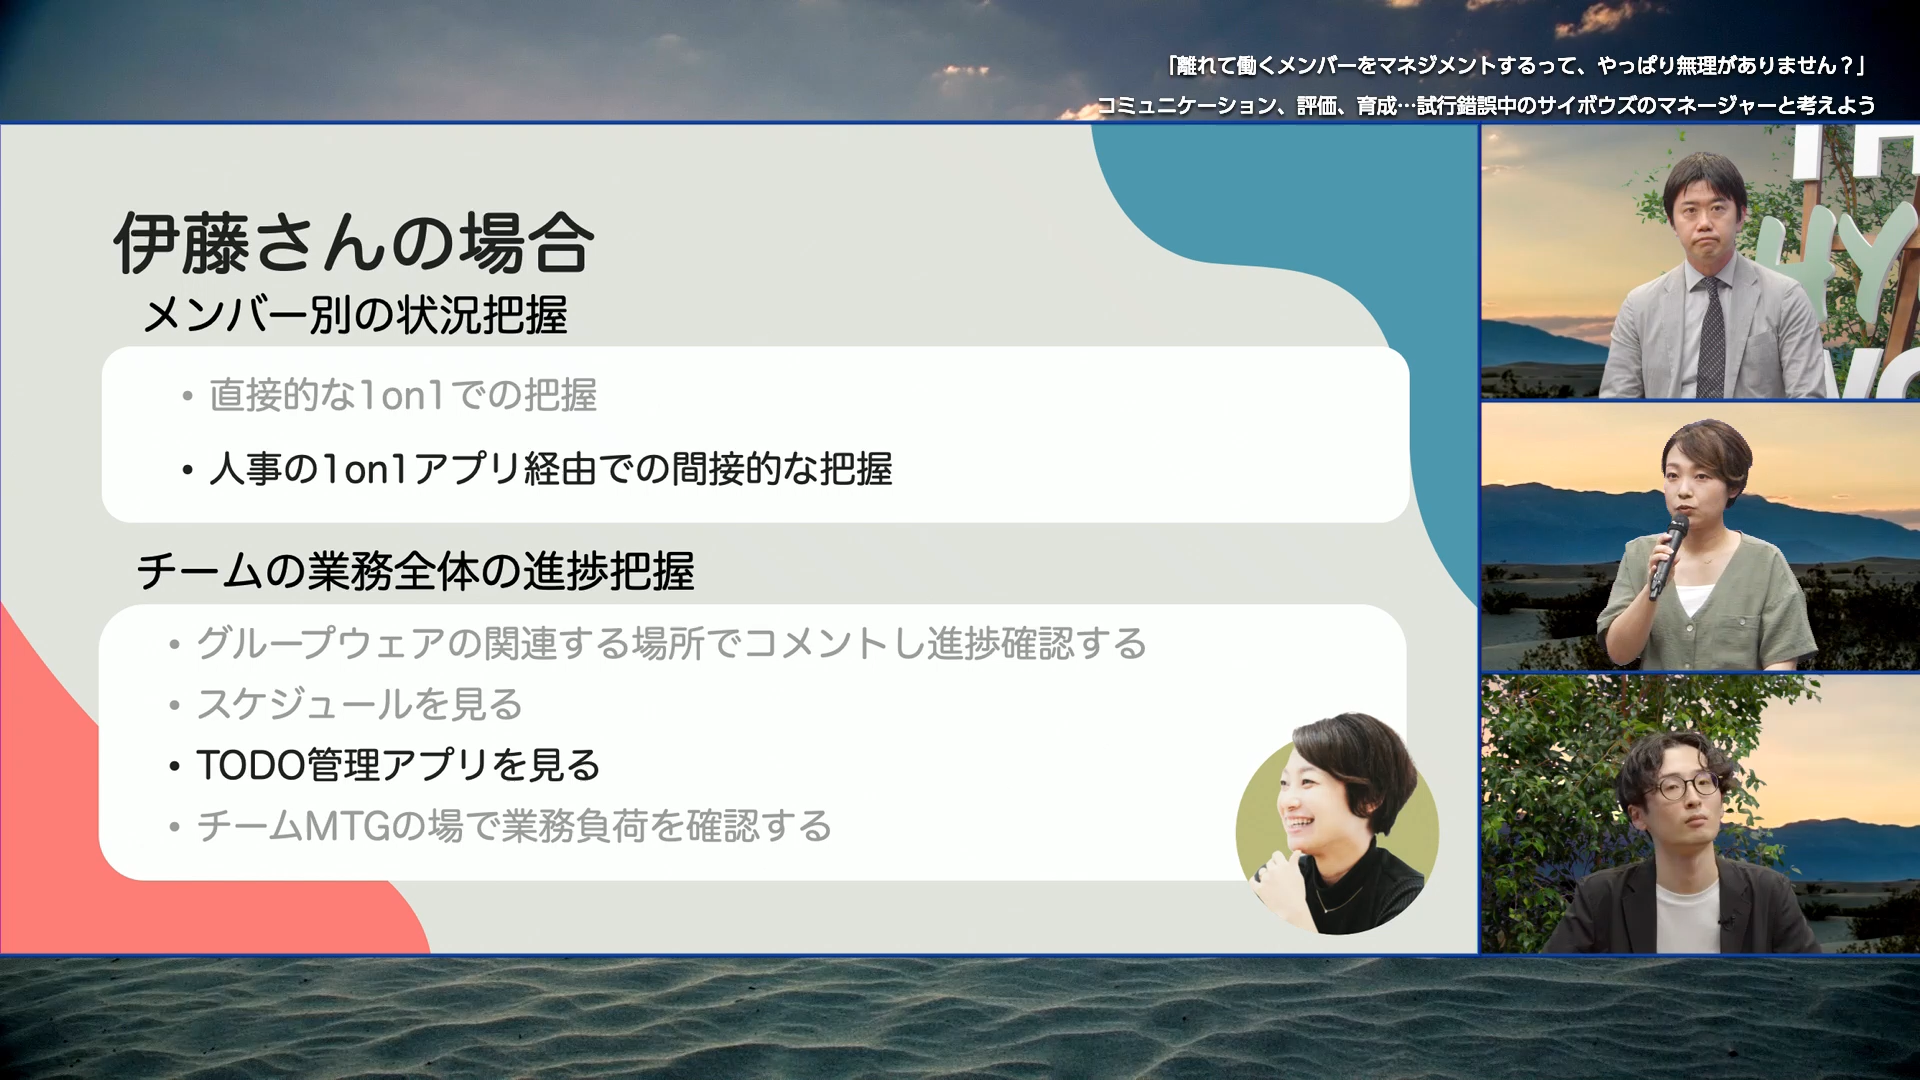 伊藤さんのメンバーのタスクや業務の状況についてのスライド